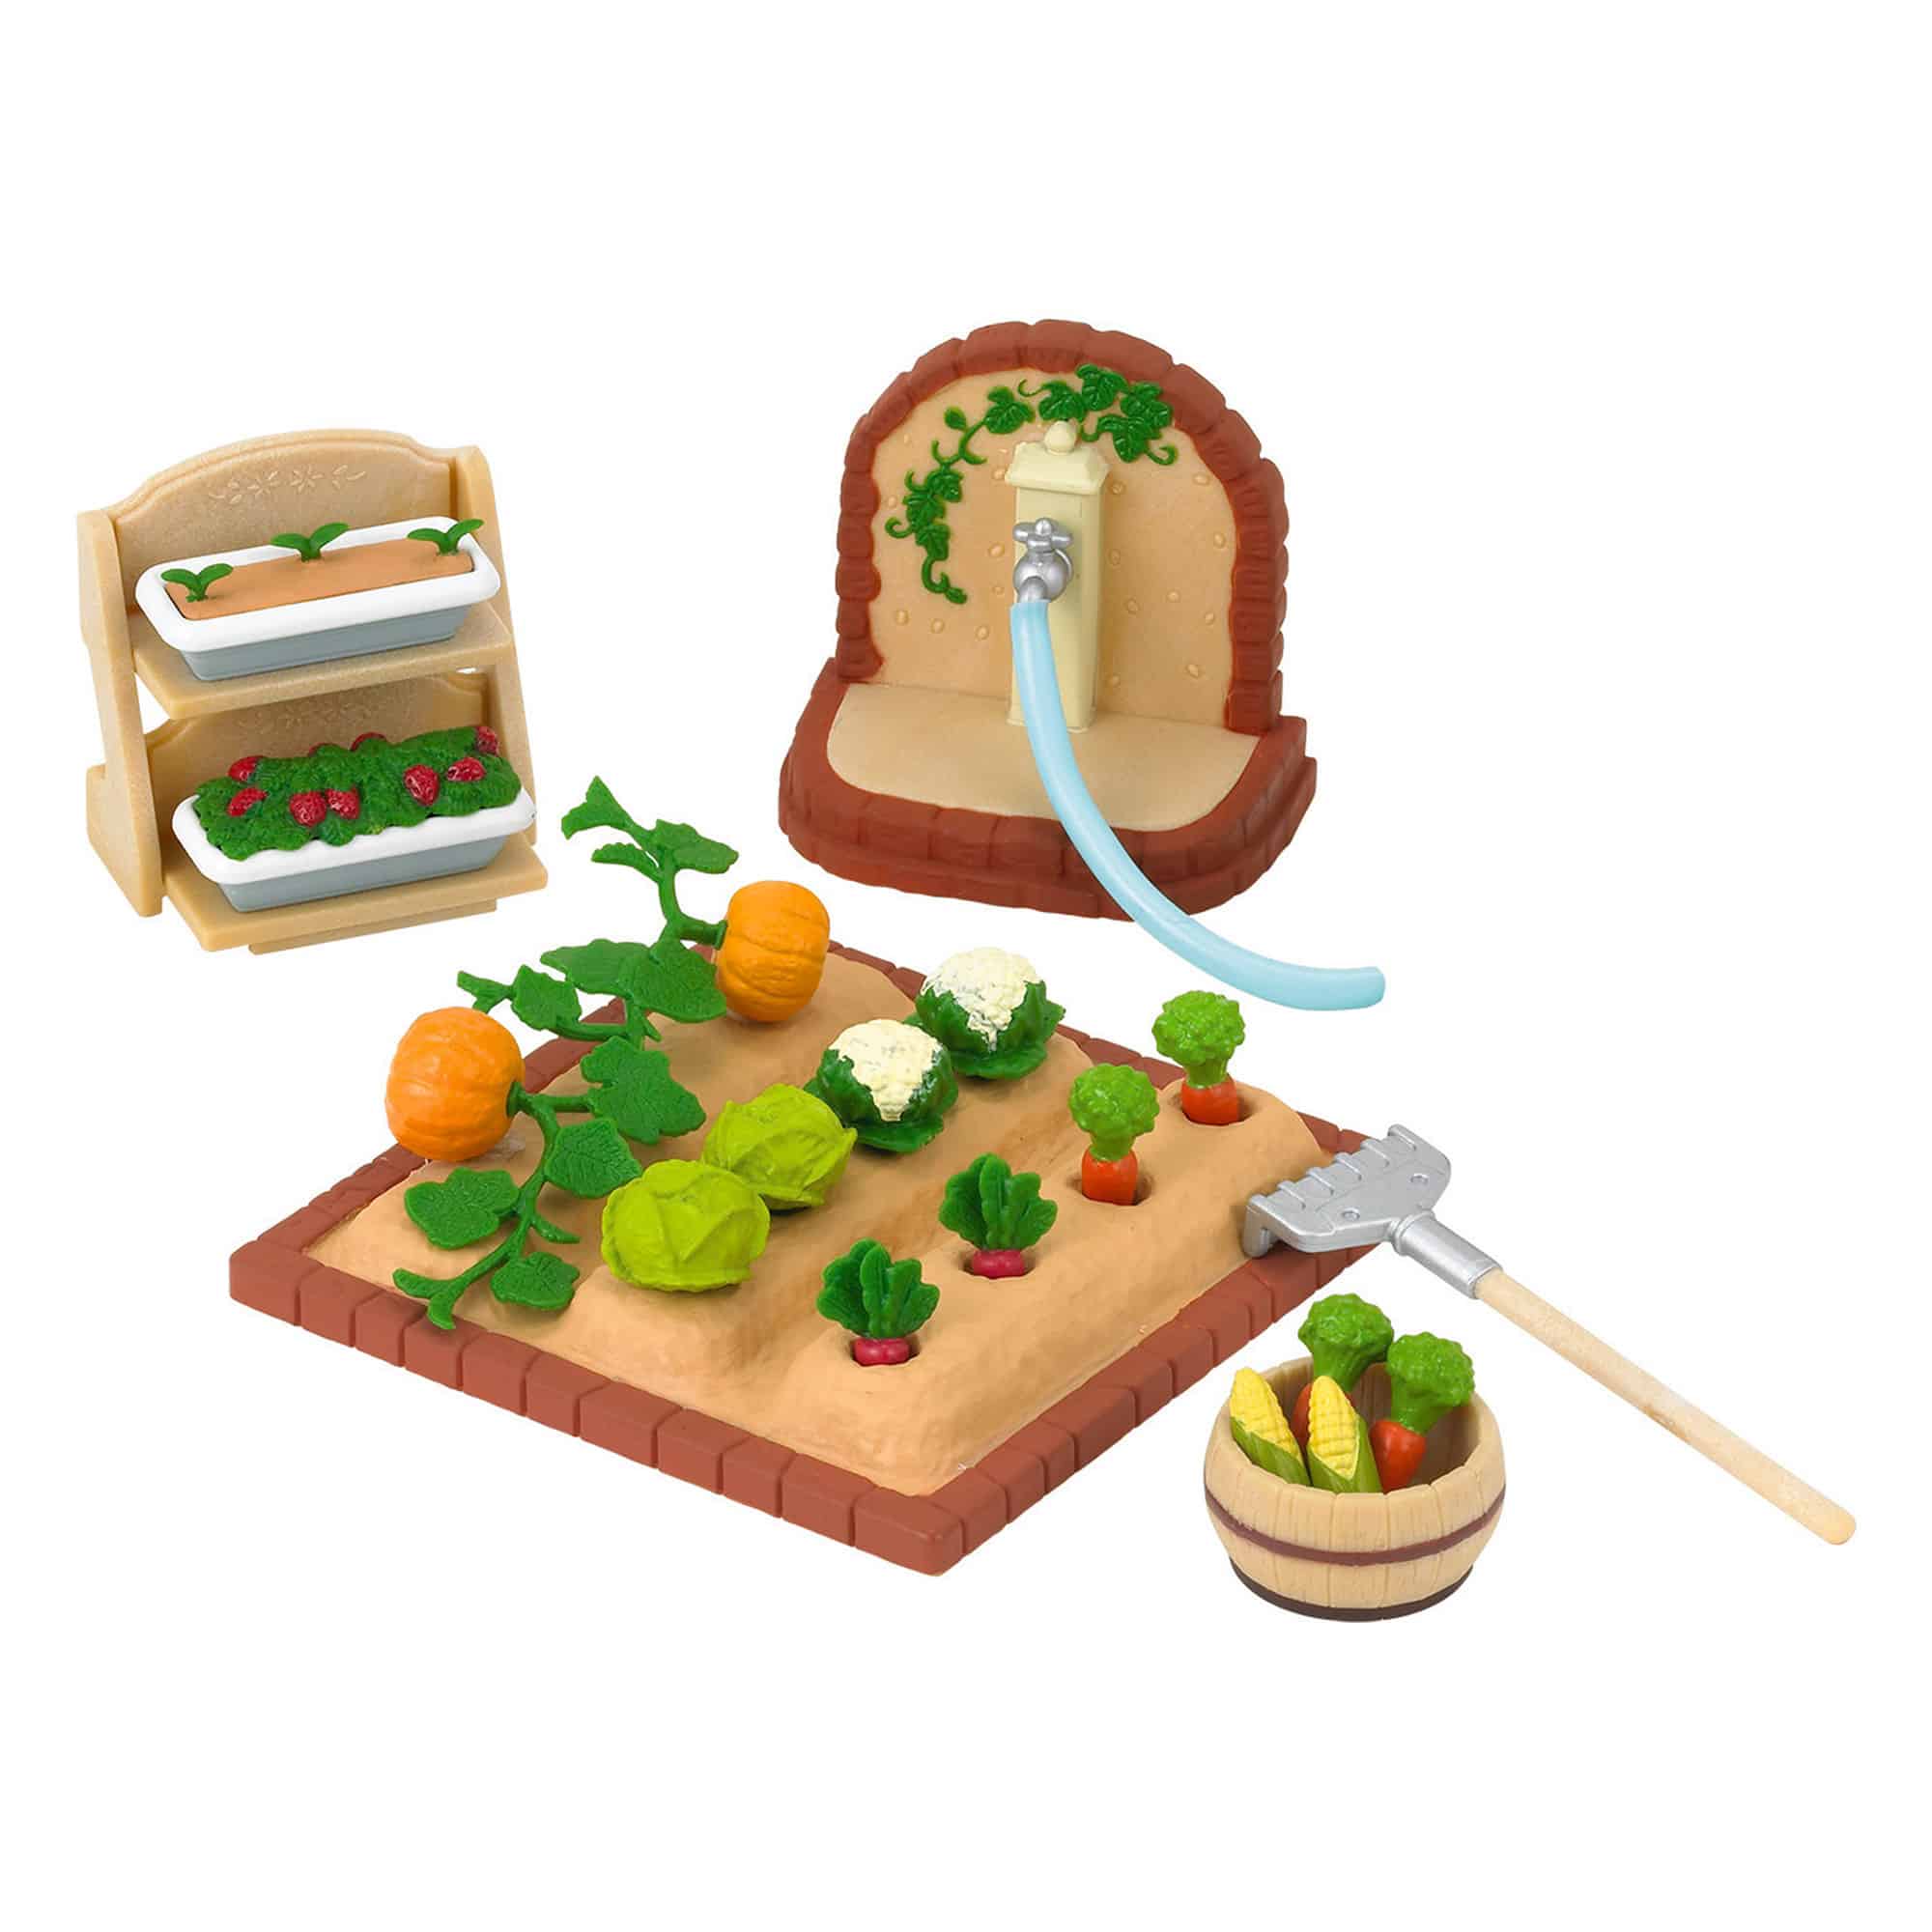 Sylvanian Families - Vegetable Garden Set SF5026